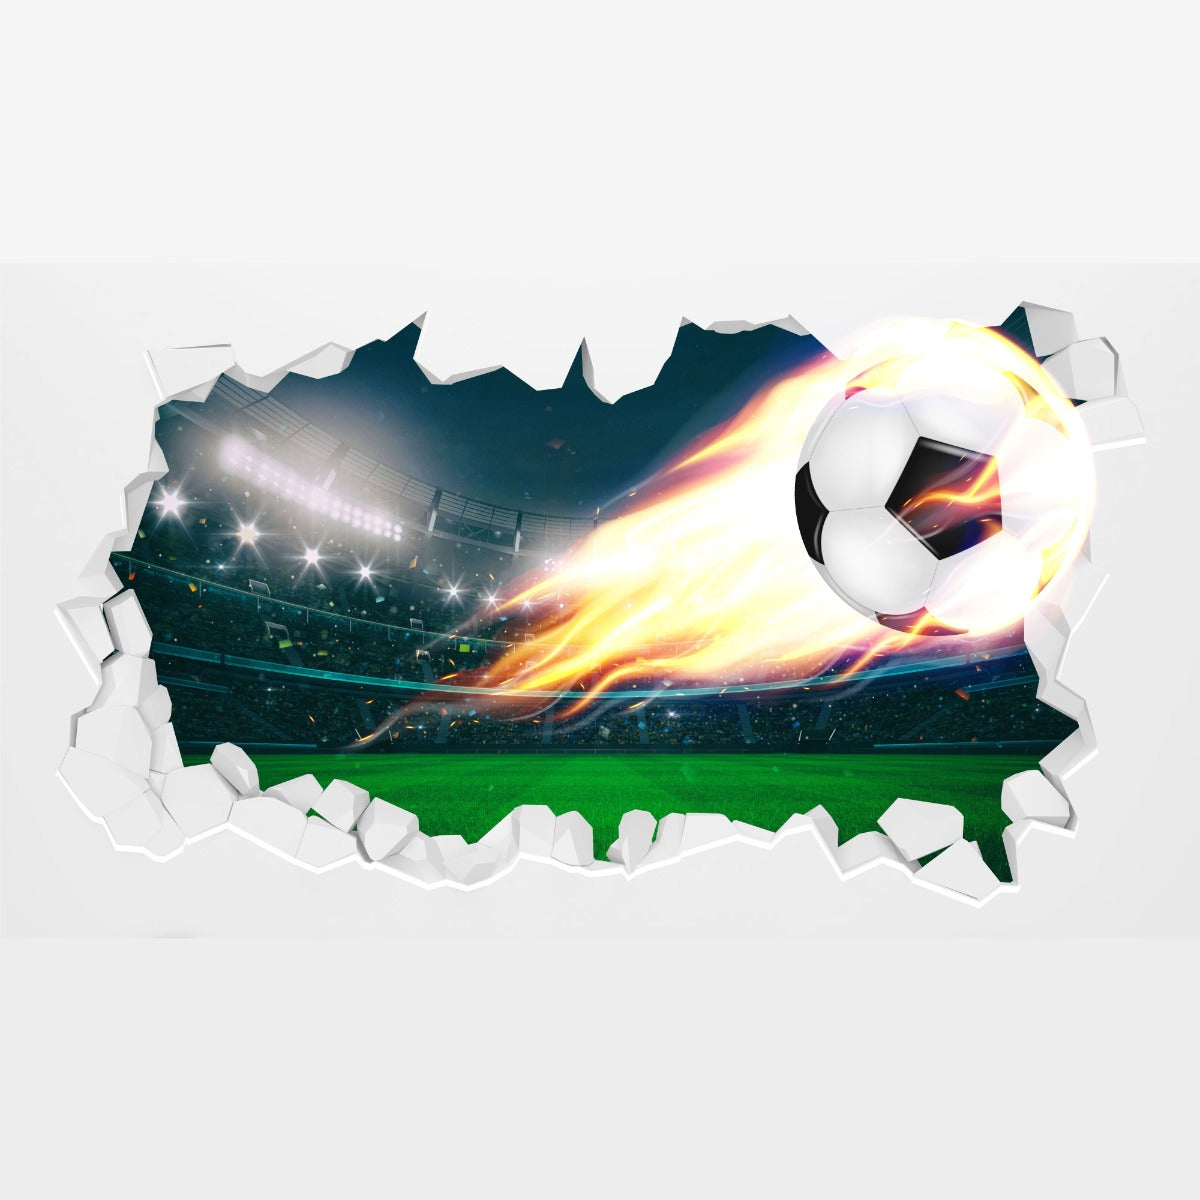 Football Wall Sticker - Fire Football Coming Through Broken Wall